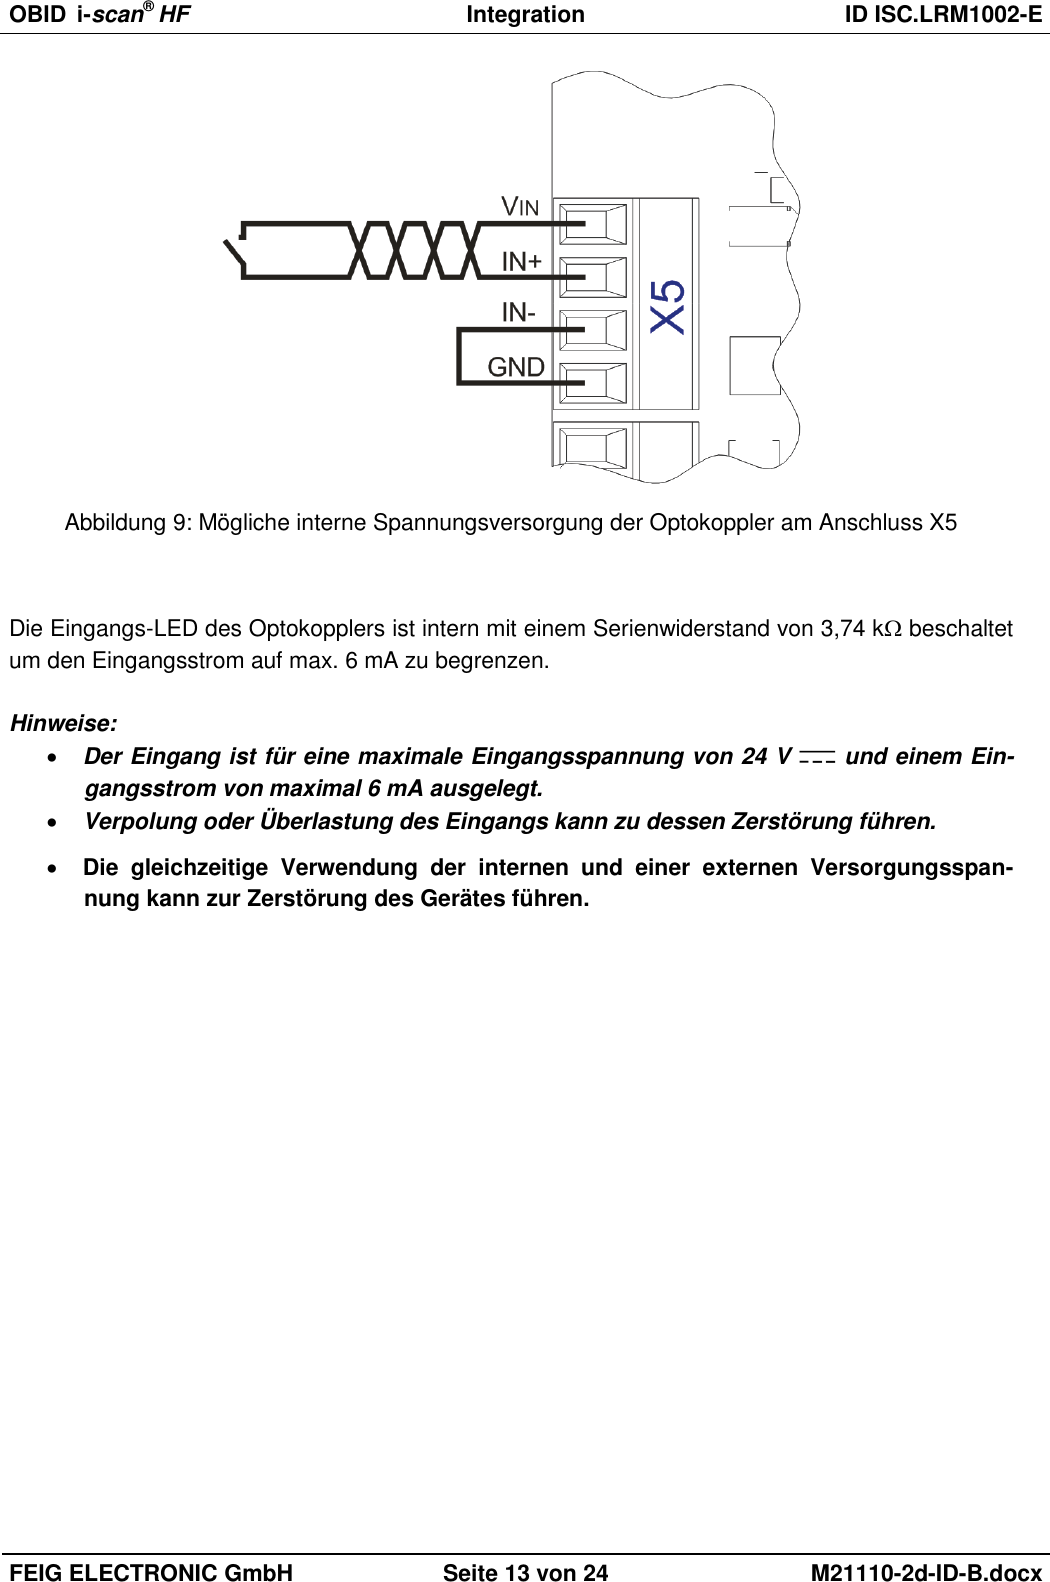 OBID  i-scan® HF Integration  ID ISC.LRM1002-E  FEIG ELECTRONIC GmbH Seite 13 von 24 M21110-2d-ID-B.docx   Abbildung 9: Mögliche interne Spannungsversorgung der Optokoppler am Anschluss X5   Die Eingangs-LED des Optokopplers ist intern mit einem Serienwiderstand von 3,74 k beschaltet um den Eingangsstrom auf max. 6 mA zu begrenzen.   Hinweise:  Der Eingang ist für eine maximale Eingangsspannung von 24 V   und einem Ein-gangsstrom von maximal 6 mA ausgelegt.  Verpolung oder Überlastung des Eingangs kann zu dessen Zerstörung führen.   Die  gleichzeitige  Verwendung  der  internen  und  einer  externen  Versorgungsspan-nung kann zur Zerstörung des Gerätes führen. 